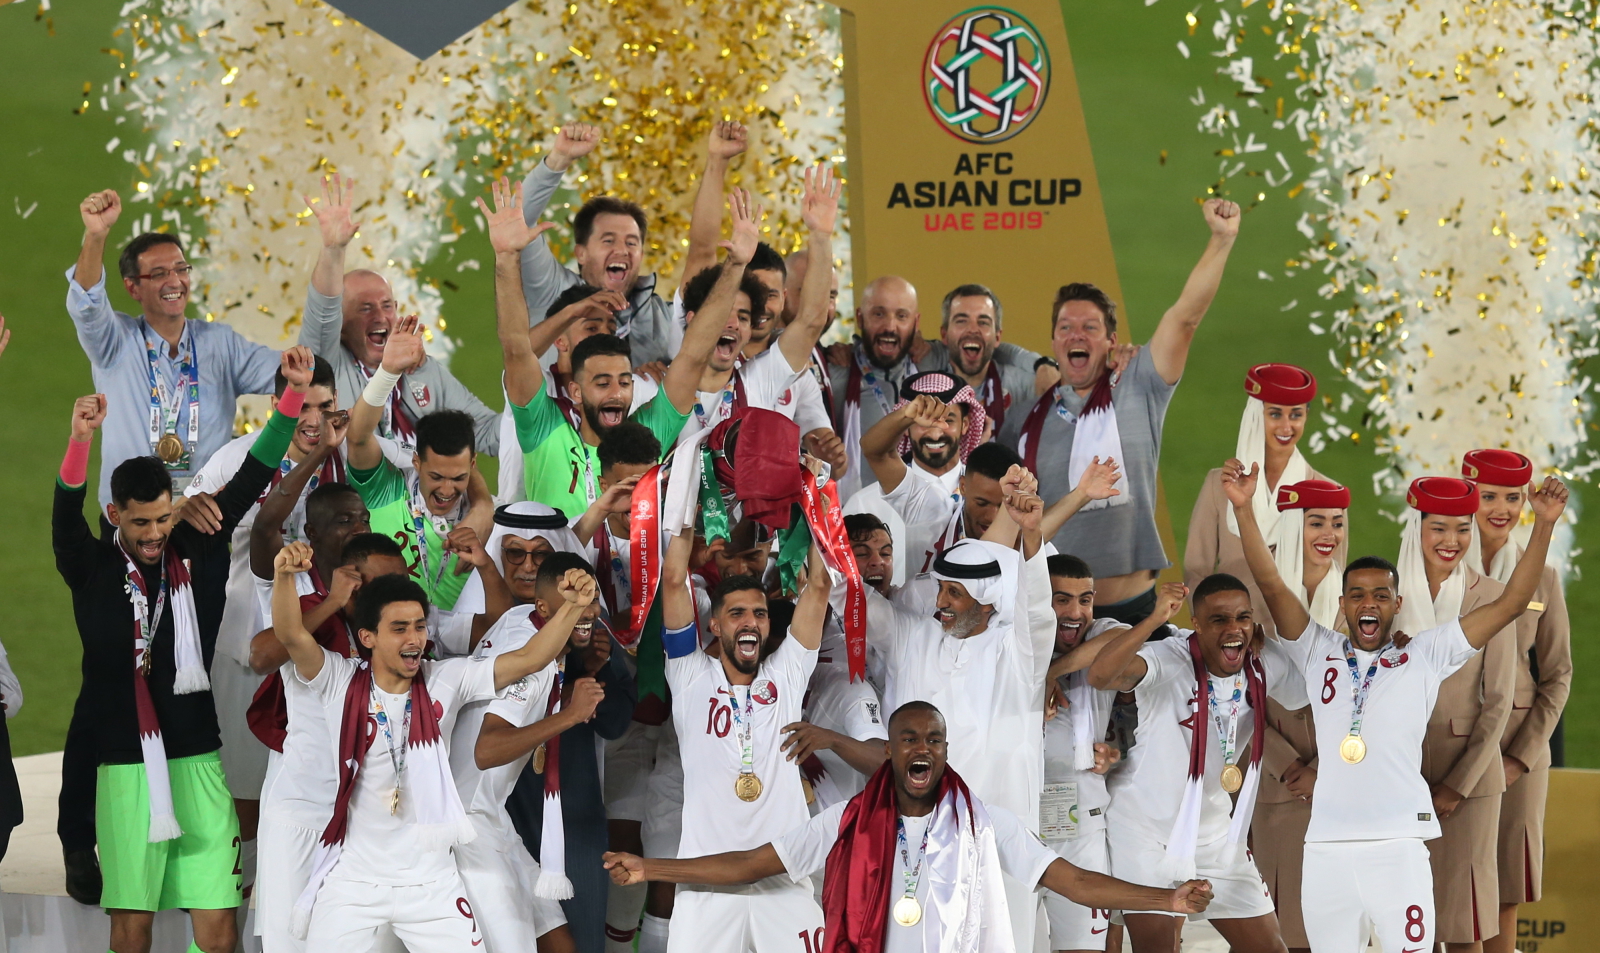 Zawodnicy Kataru cieszą się, ze zdobycia Pucharu Azji w Piłce Nożnej. Fot. PAP/EPA/ALI HAIDER